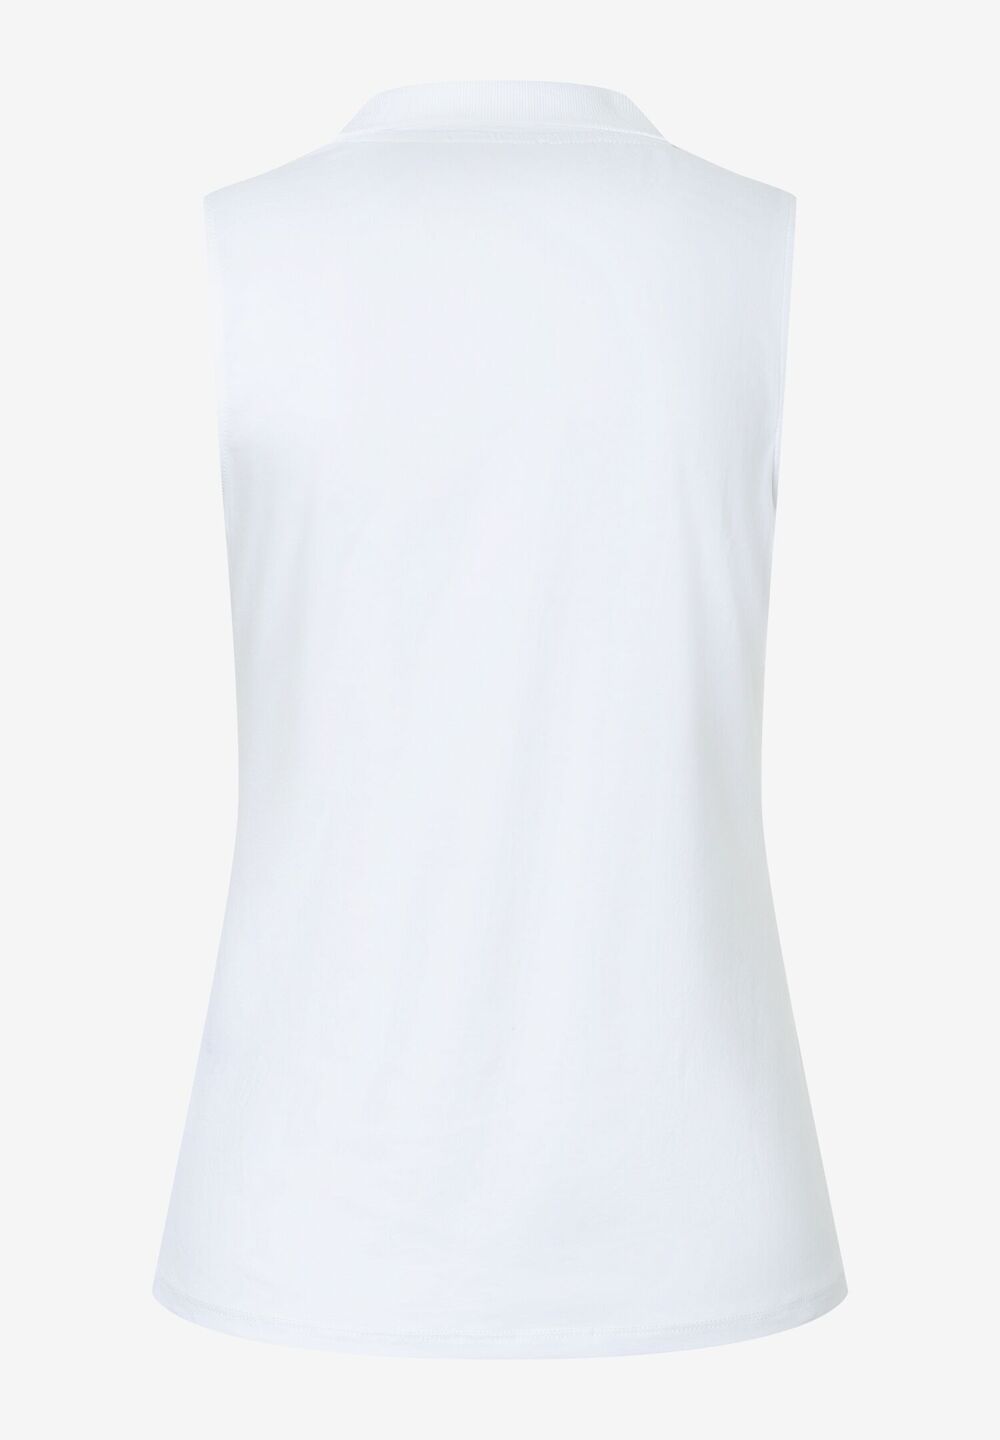 Polo-Shirt, weiß, Sommer-Kollektion, weissDetailansicht 2